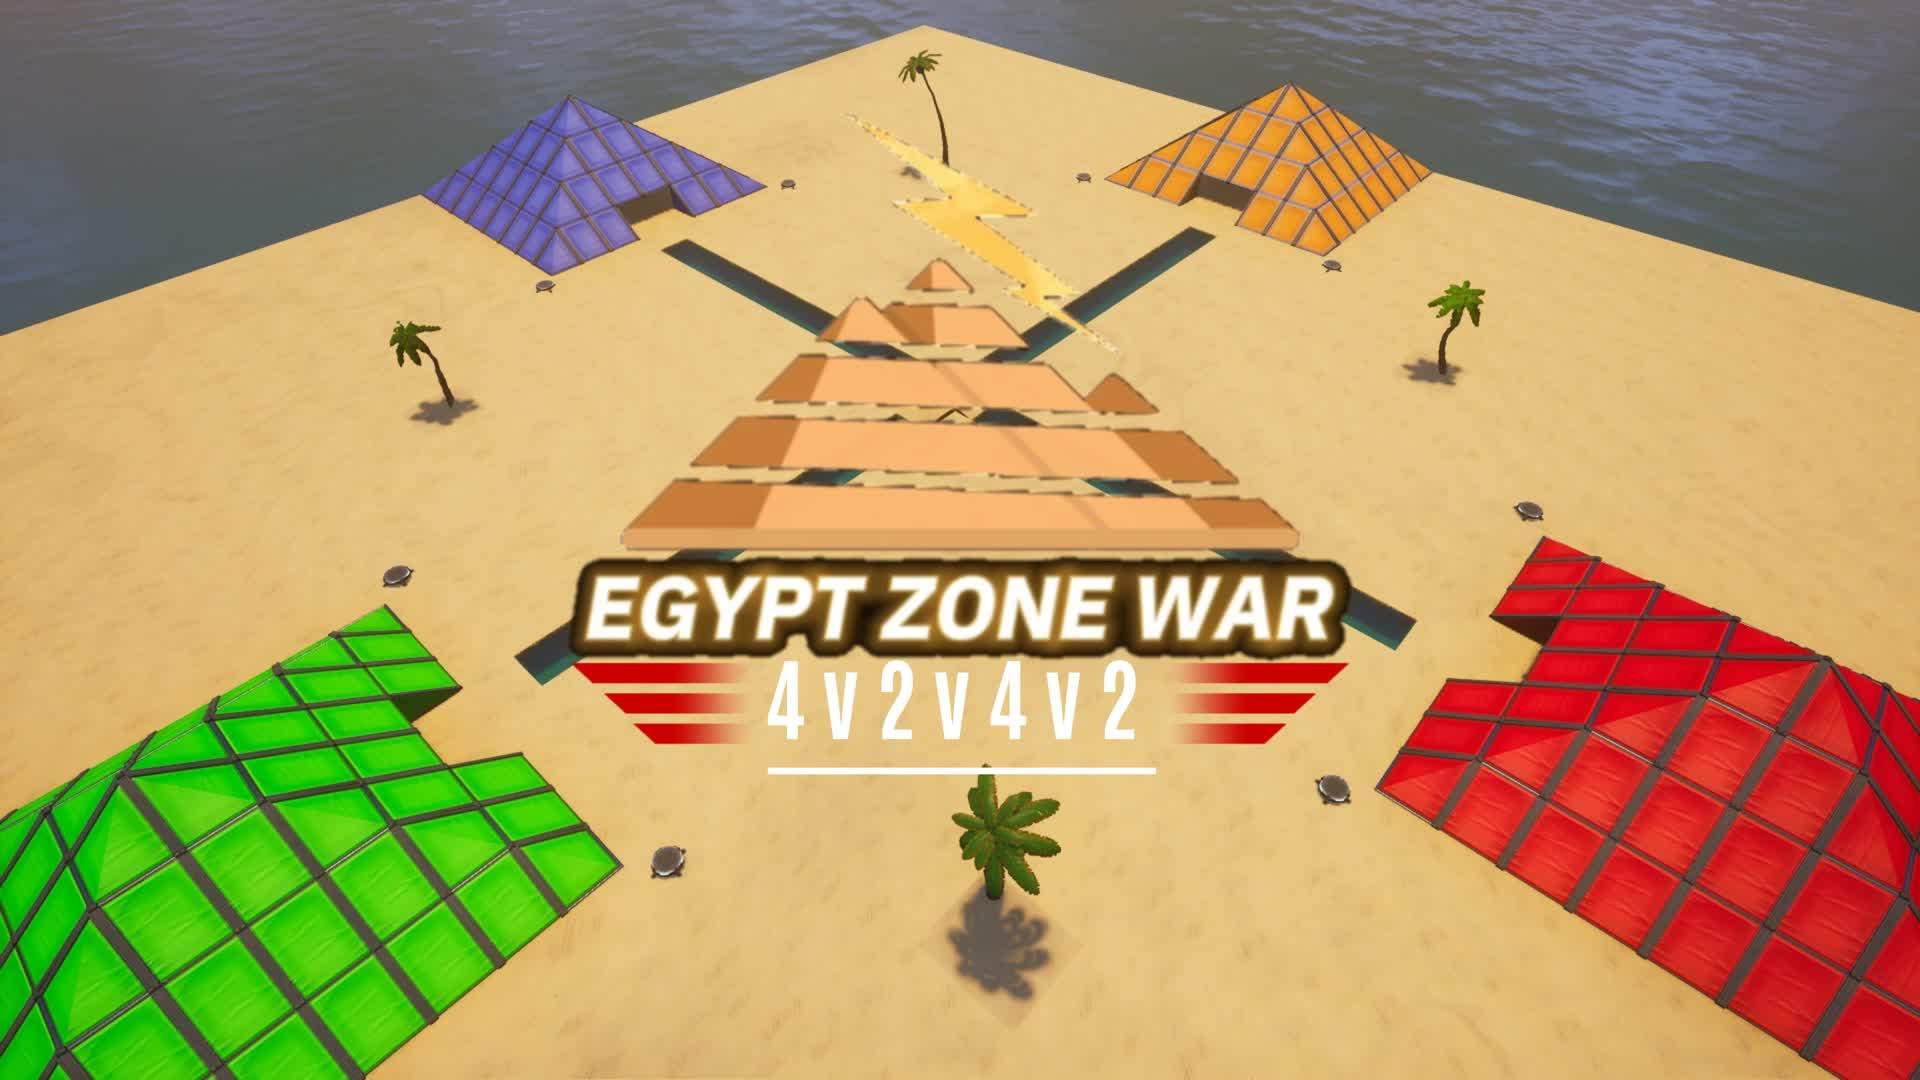 Egypt Zone Wars 4v2v4v2